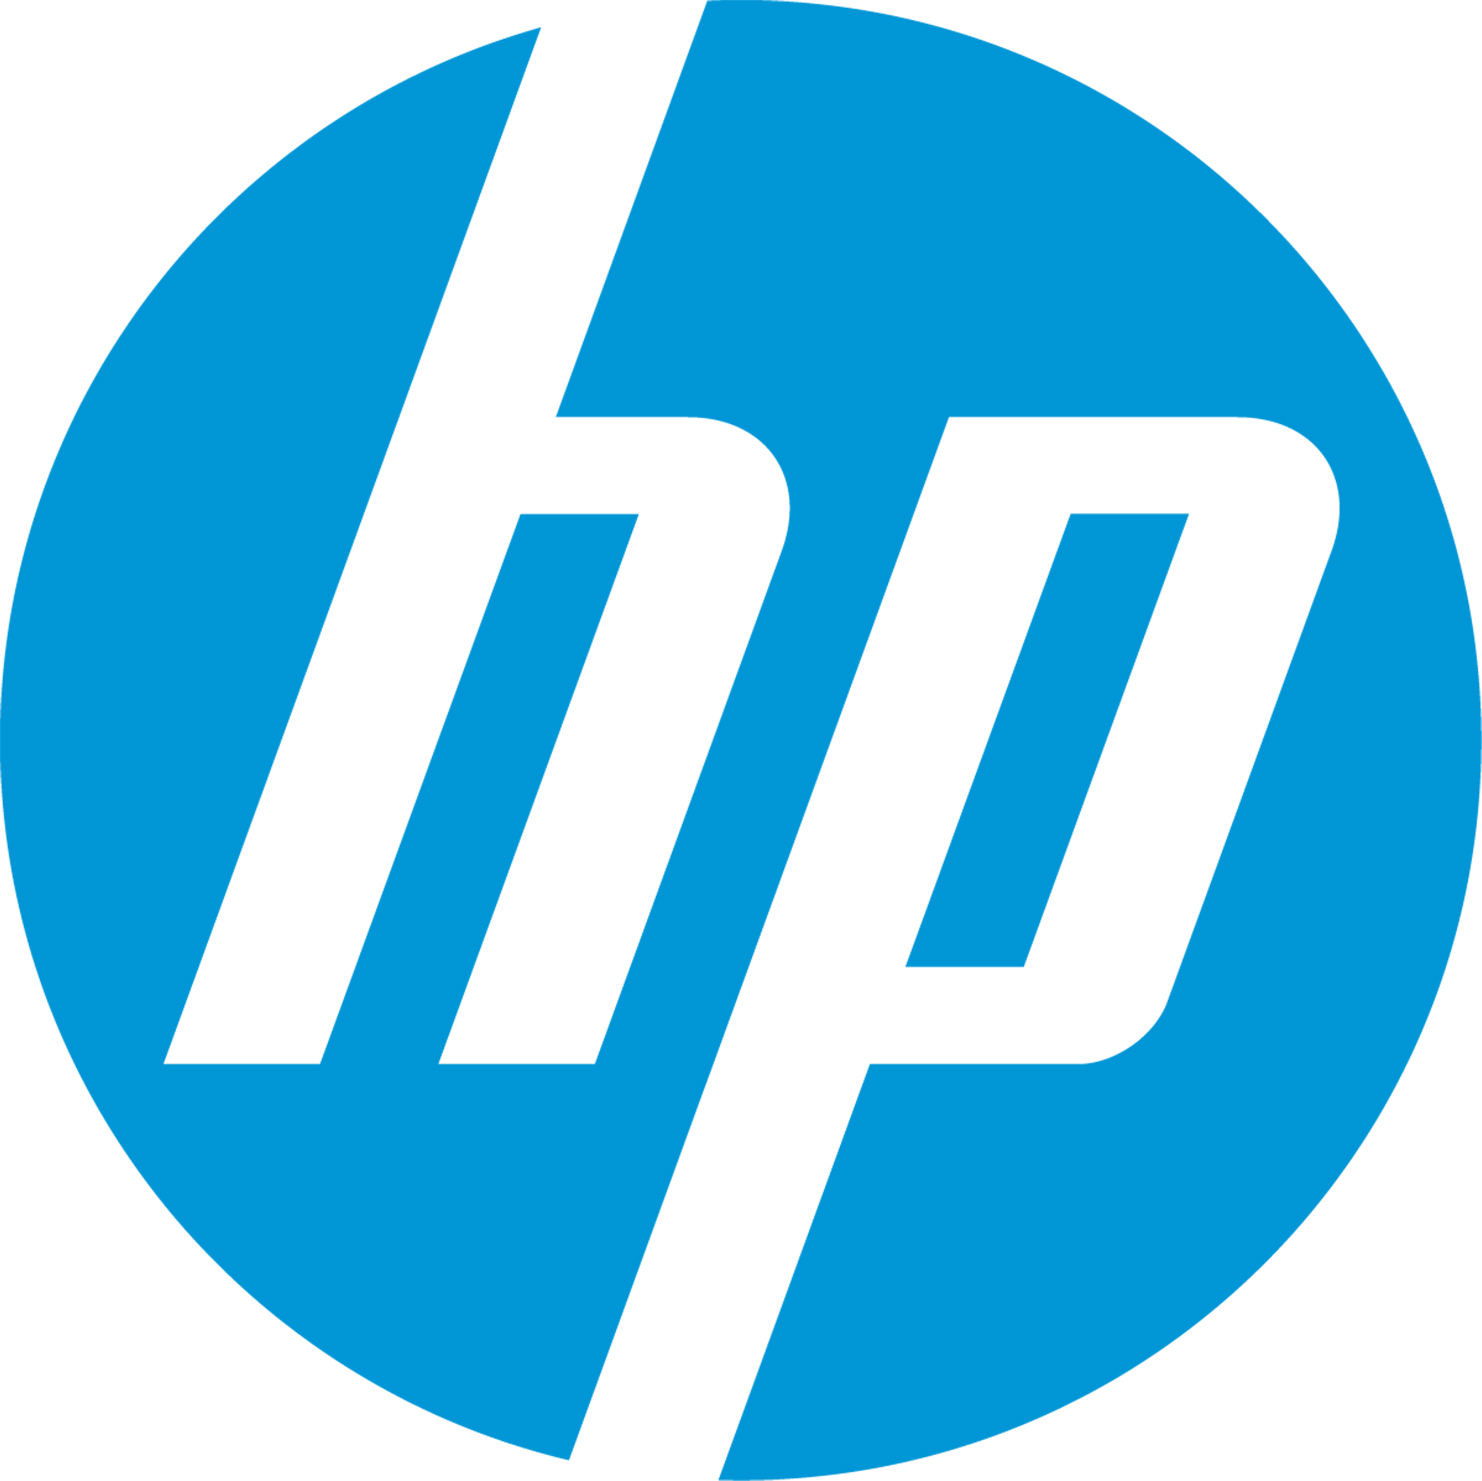 HP_Logo-1